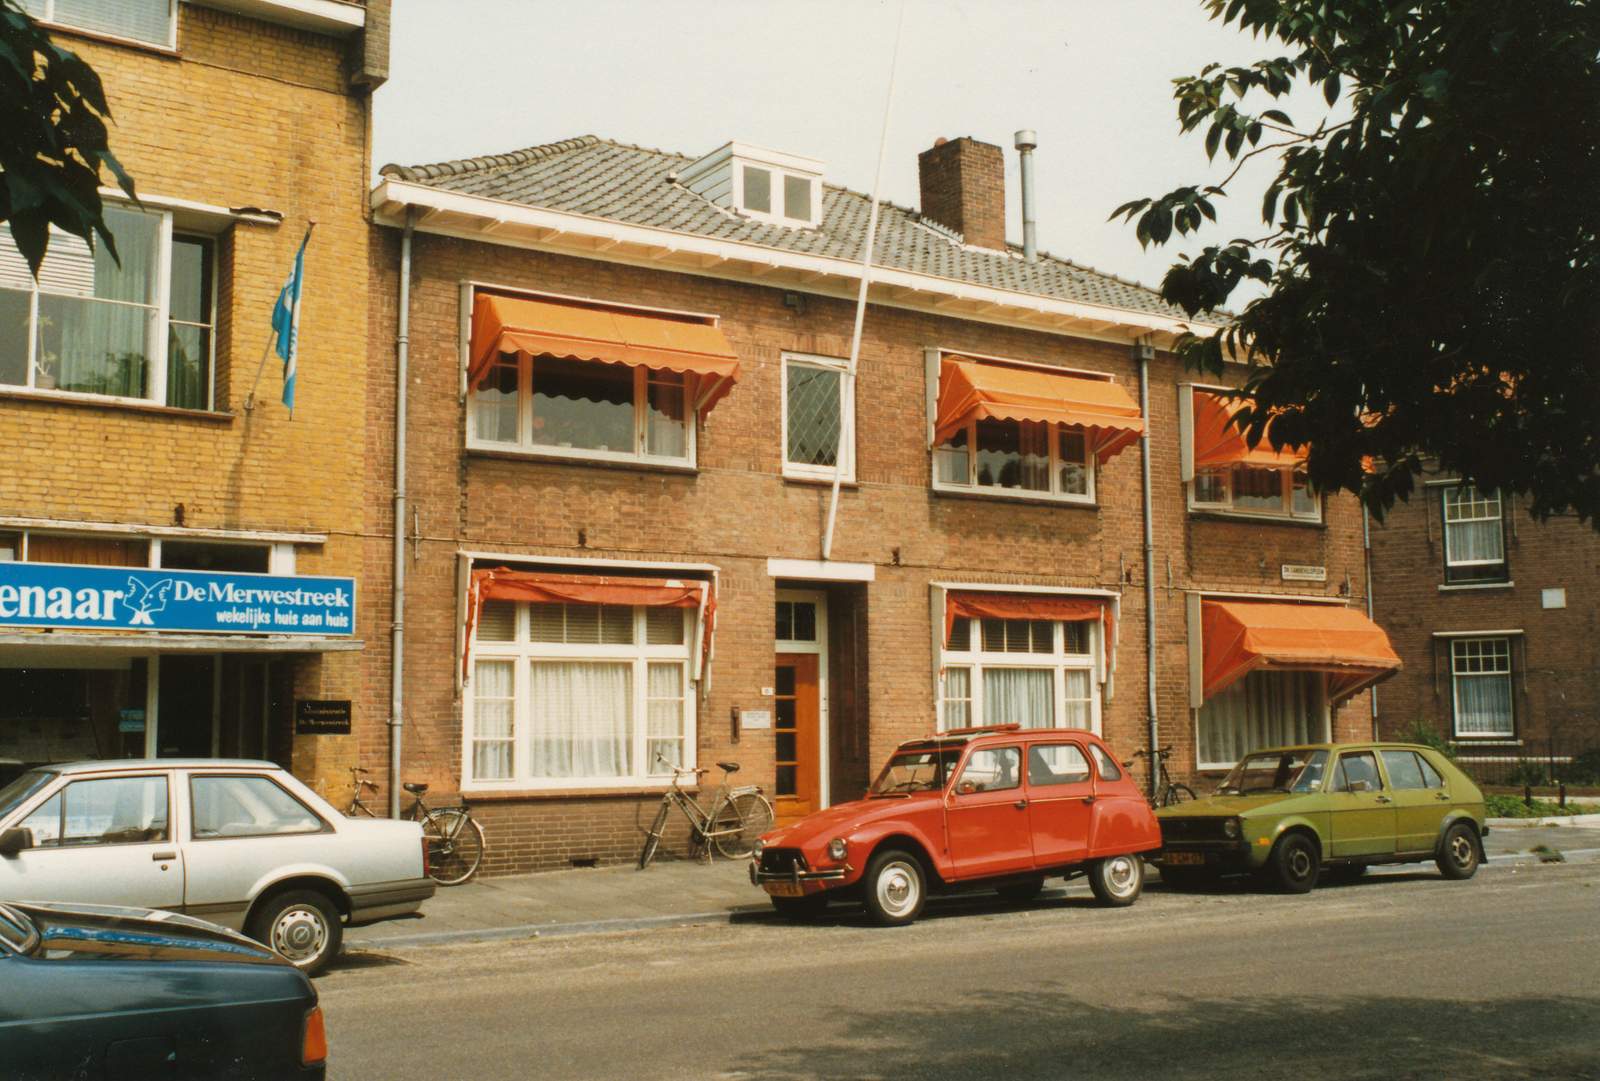 020-216 - Dr. Langeveldplein - 1986.jpg